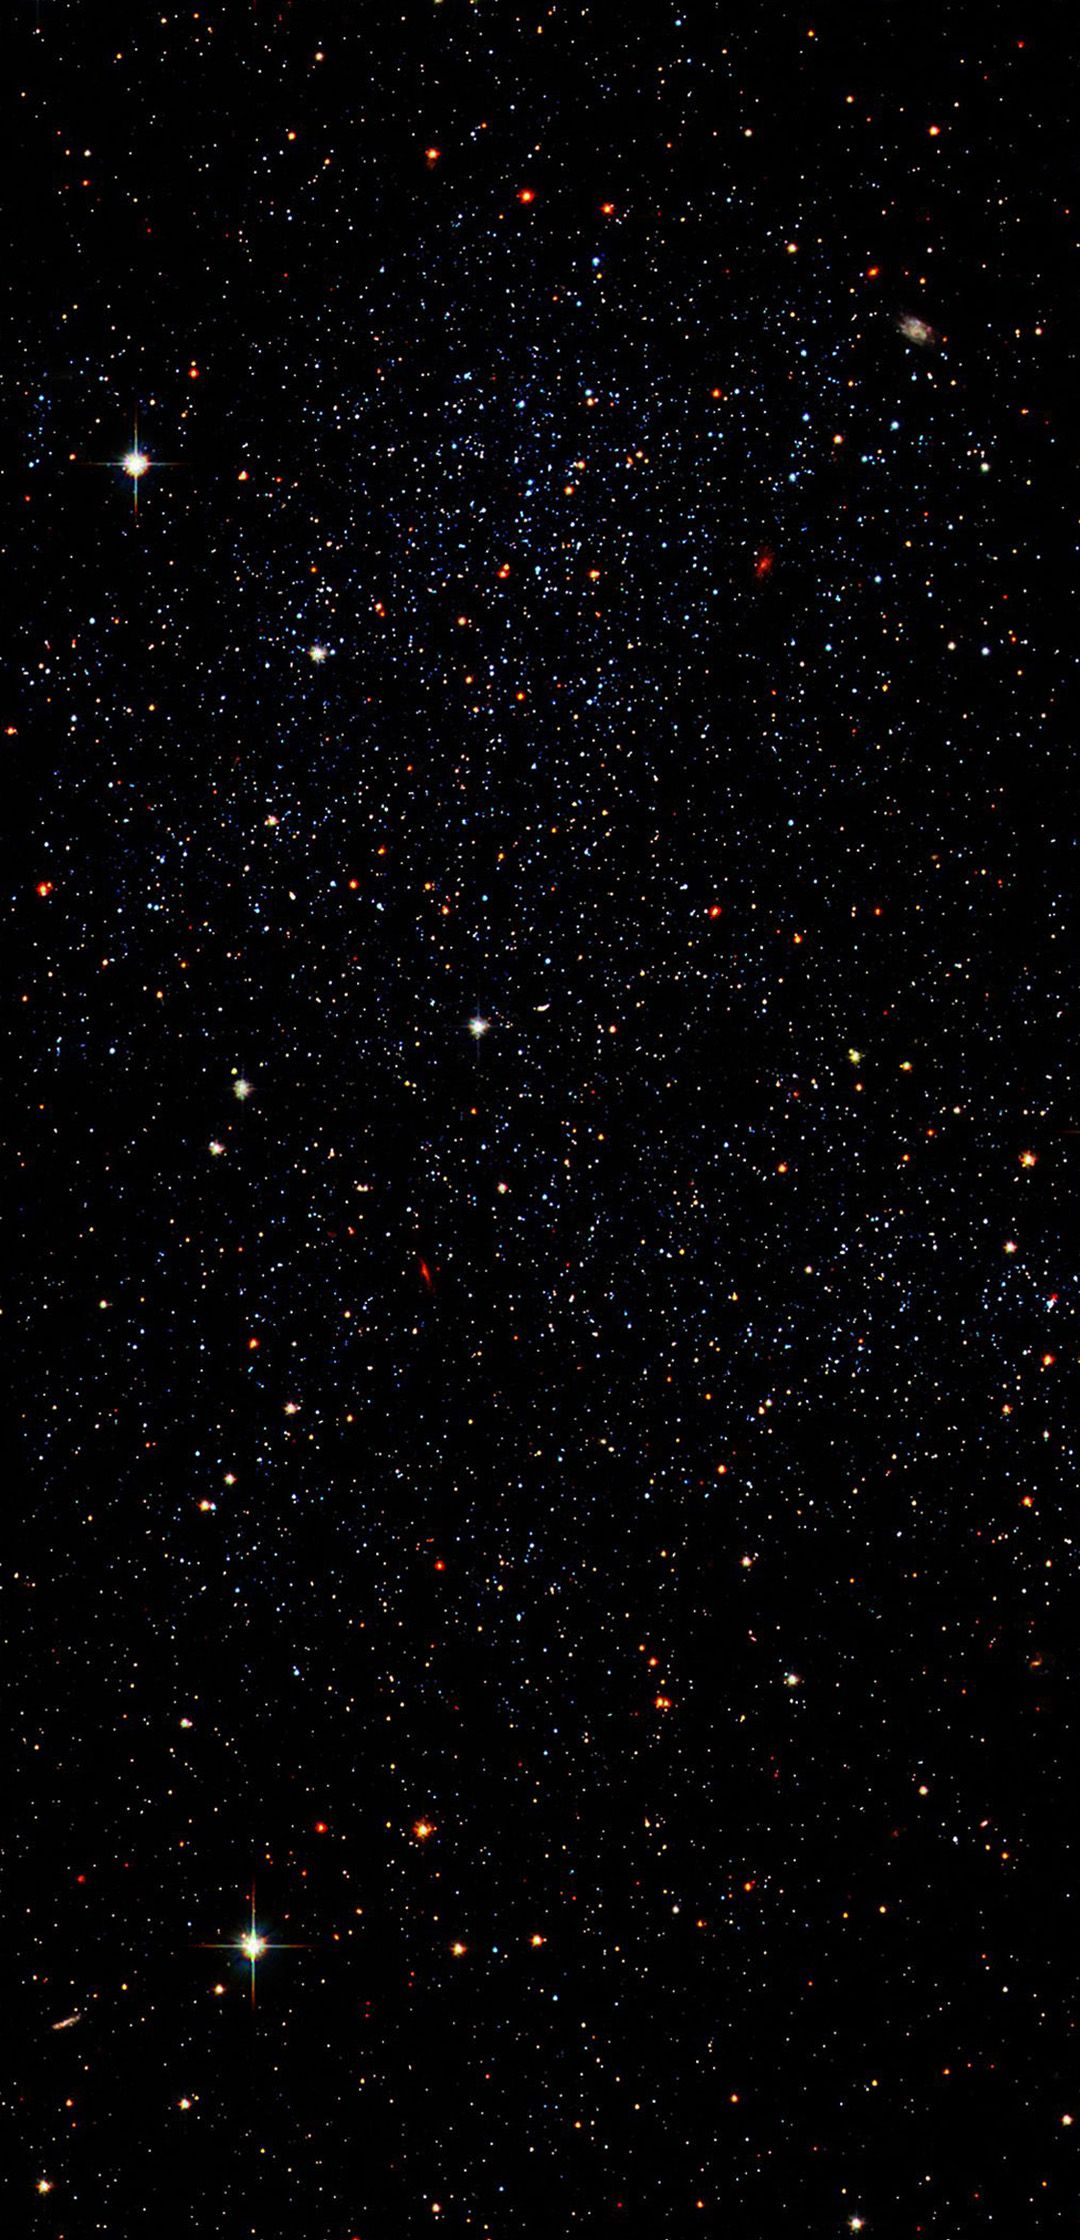 Hình nền sao: Bạn muốn chìm đắm trong một bầu trời đầy sao? Hãy ngắm nhìn những hình nền sao rực rỡ và cảm nhận sự trống trải của vũ trụ. Mỗi ngôi sao đều đậm chất cổ điển nhưng mang lại sự mới lạ, tạo cho bạn một cảm giác trang nghiêm và huyền bí.